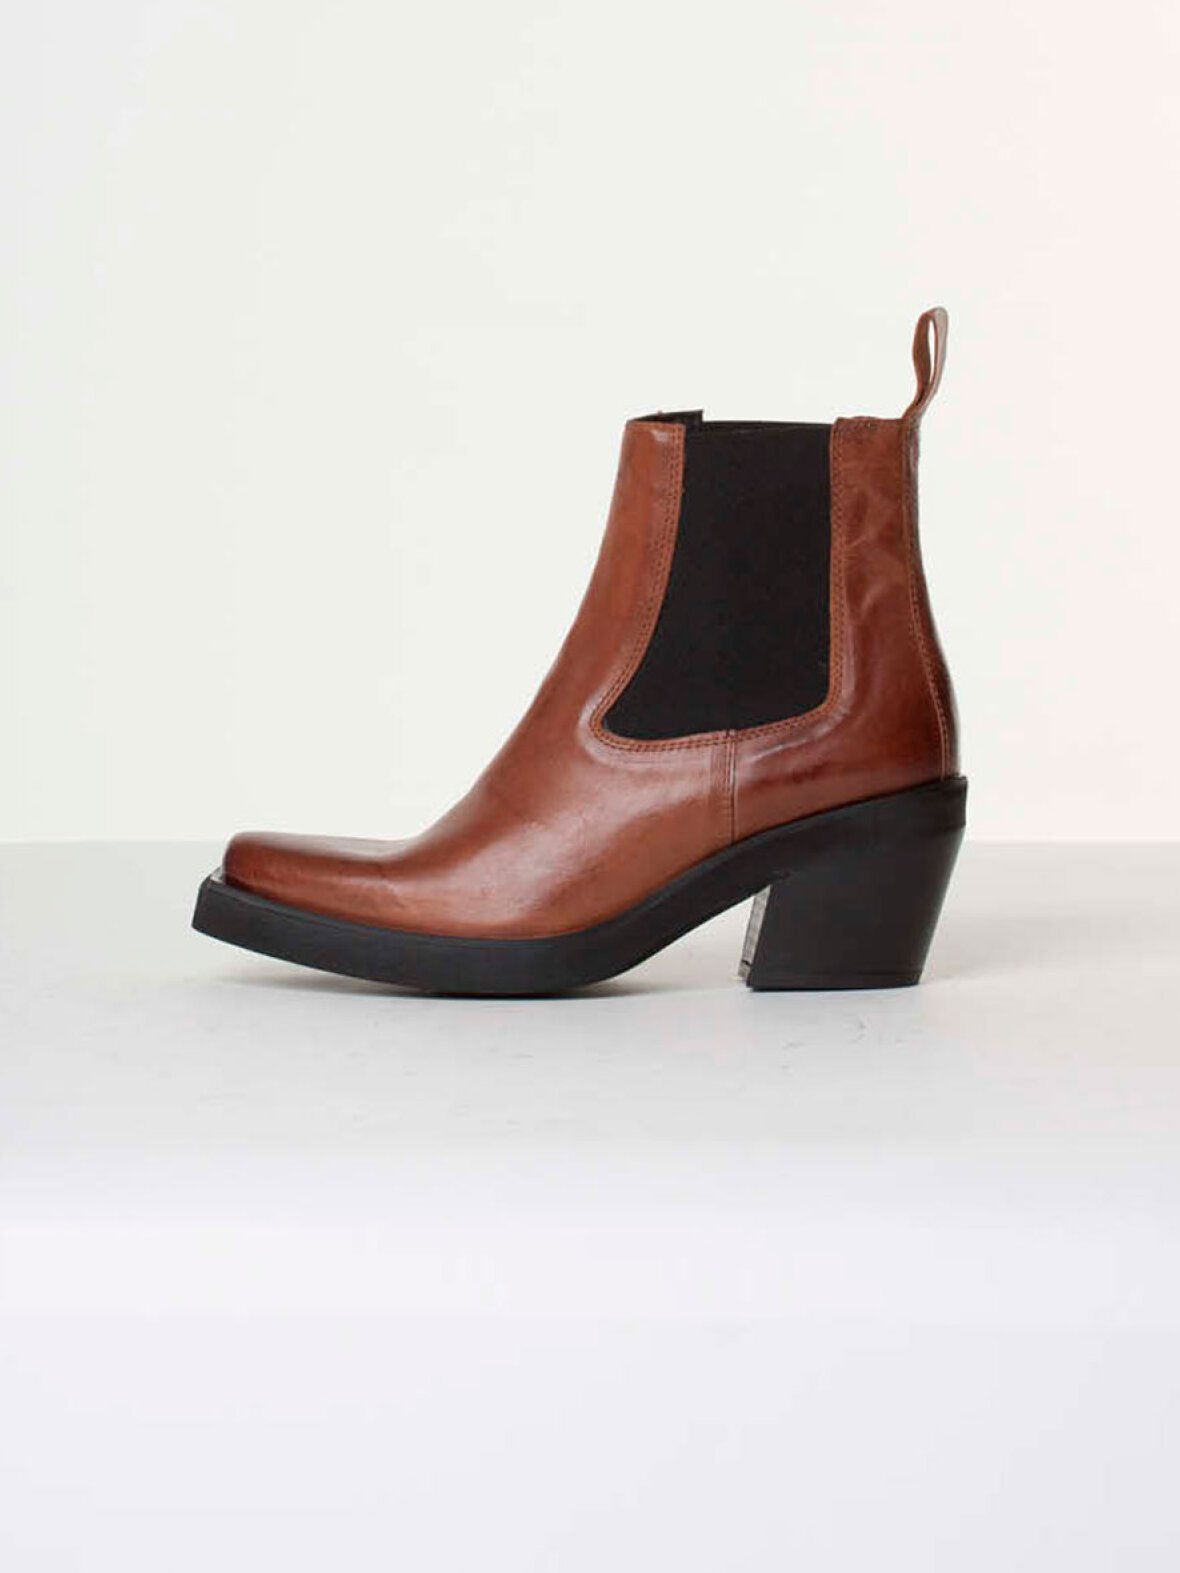 Etna-Caramel-1 Ankle Boots - 7